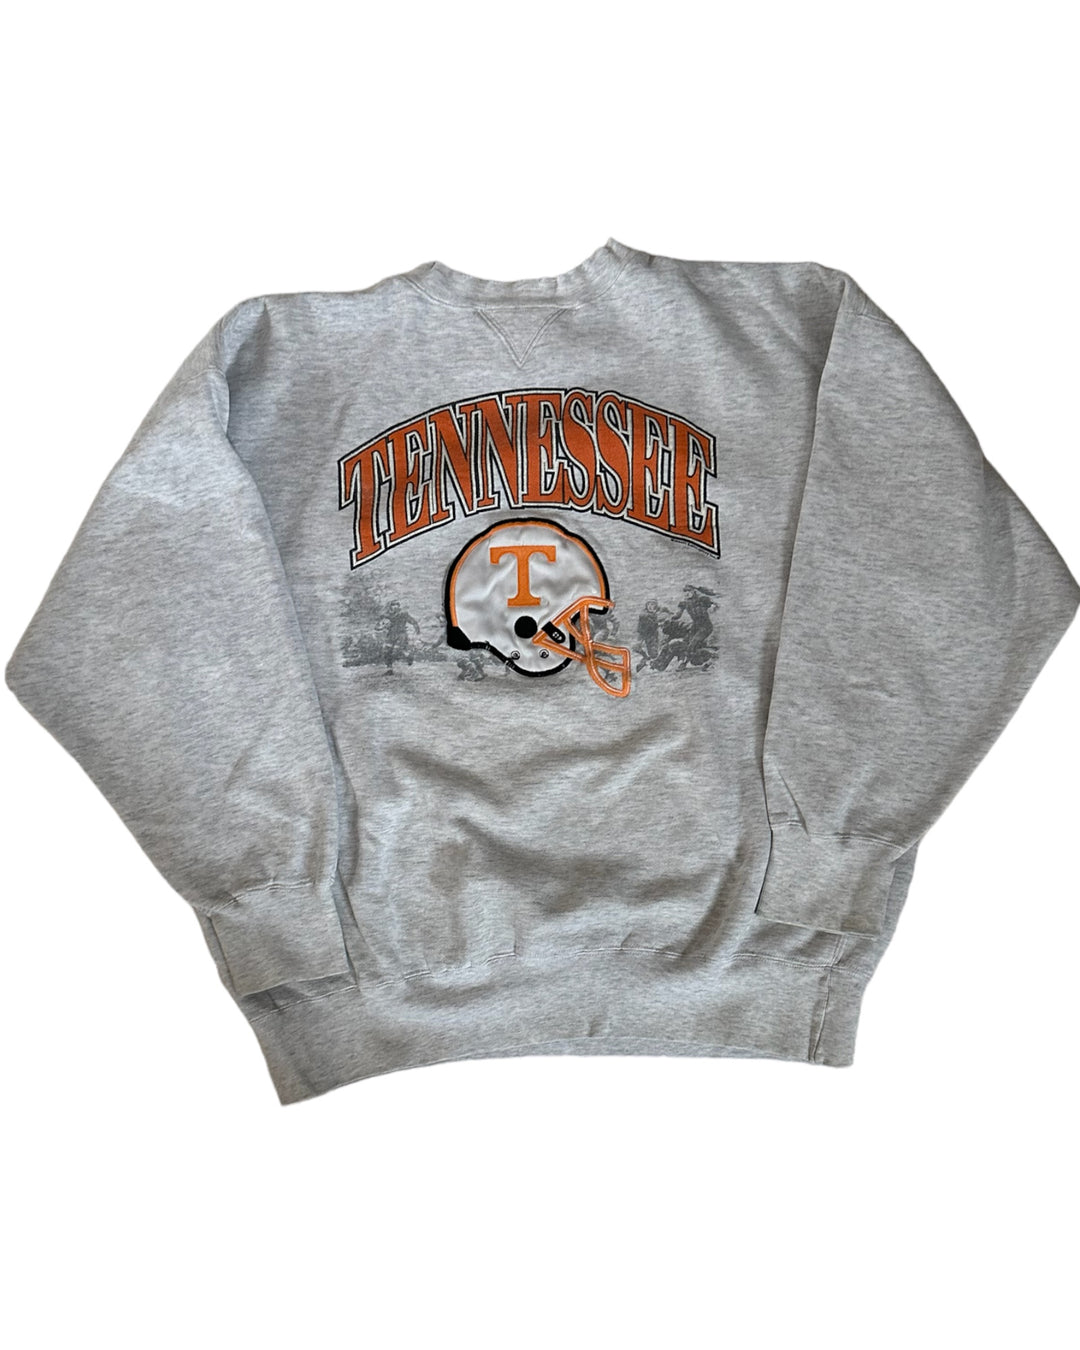 Tennessee Vintage Sweatshirt